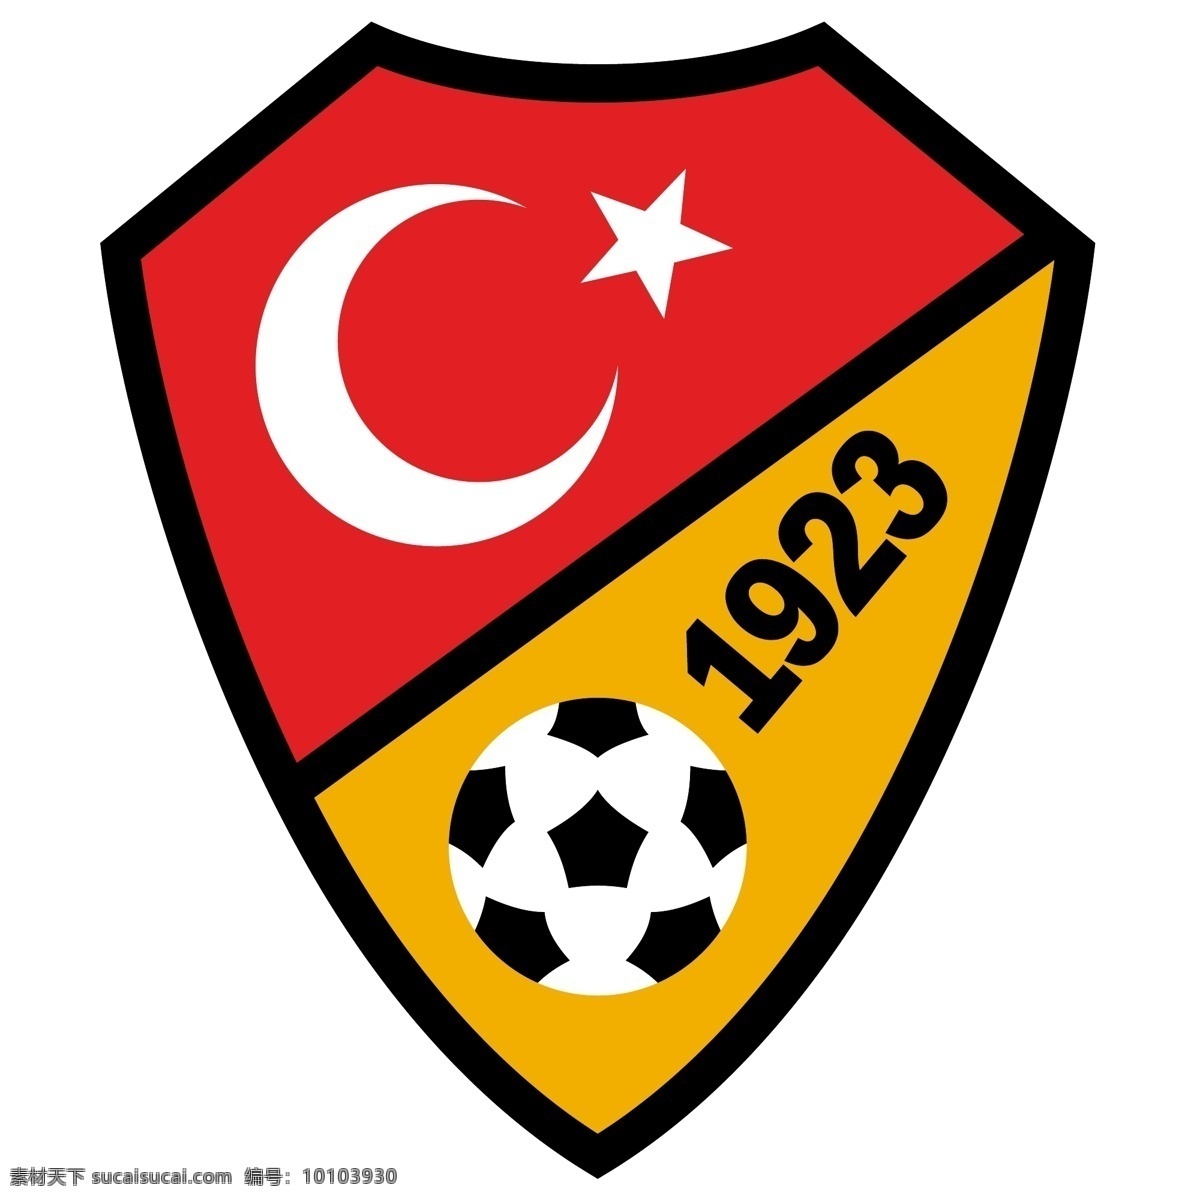 土耳其 足球 协会 标识 公司 免费 品牌 品牌标识 商标 矢量标志下载 免费矢量标识 矢量 psd源文件 logo设计